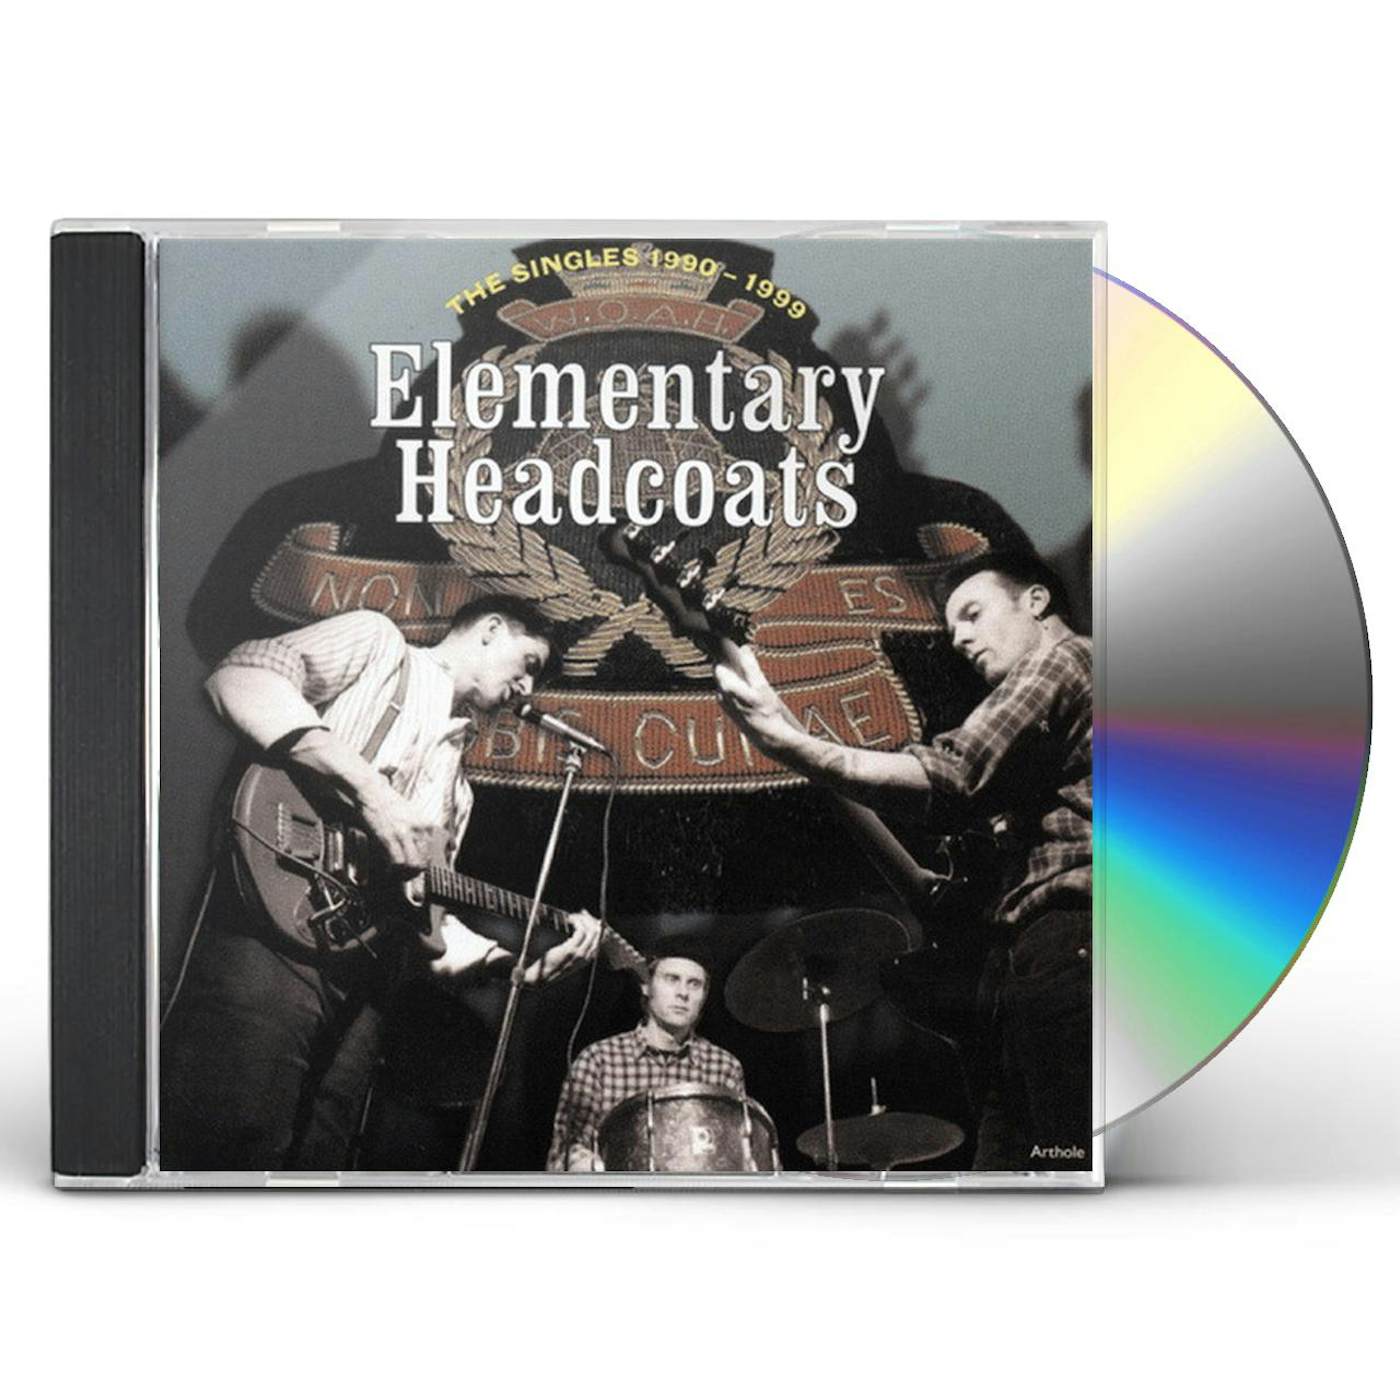 Thee Headcoats ELEMENTARY HEADCOATS CD